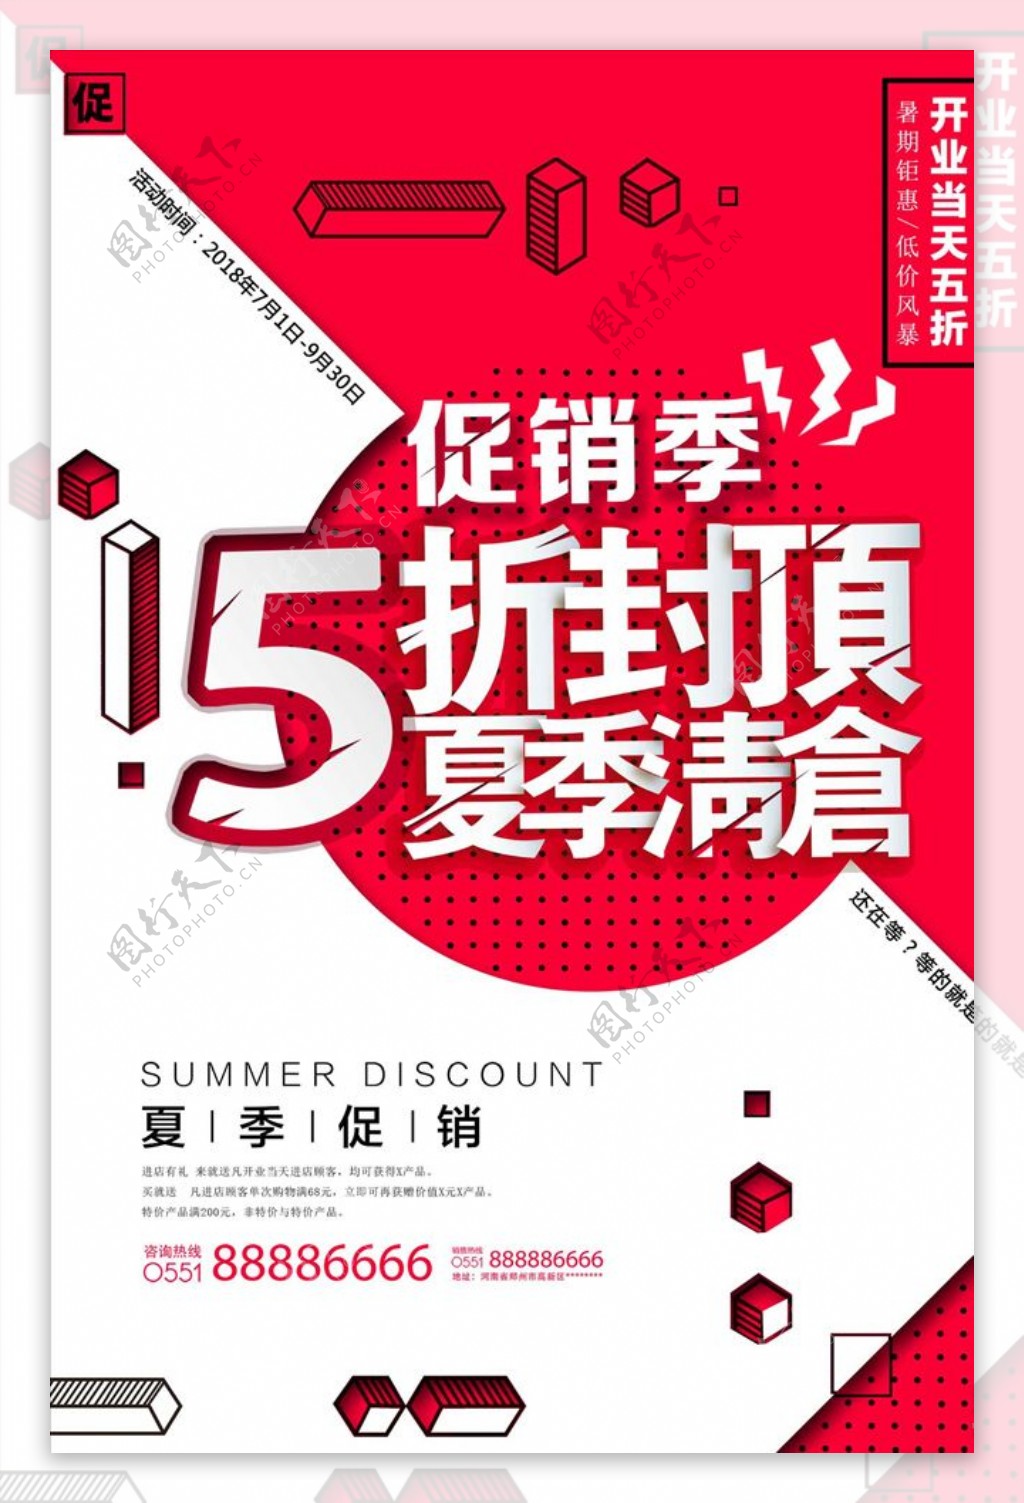 简约红色夏季折扣促销宣传海报